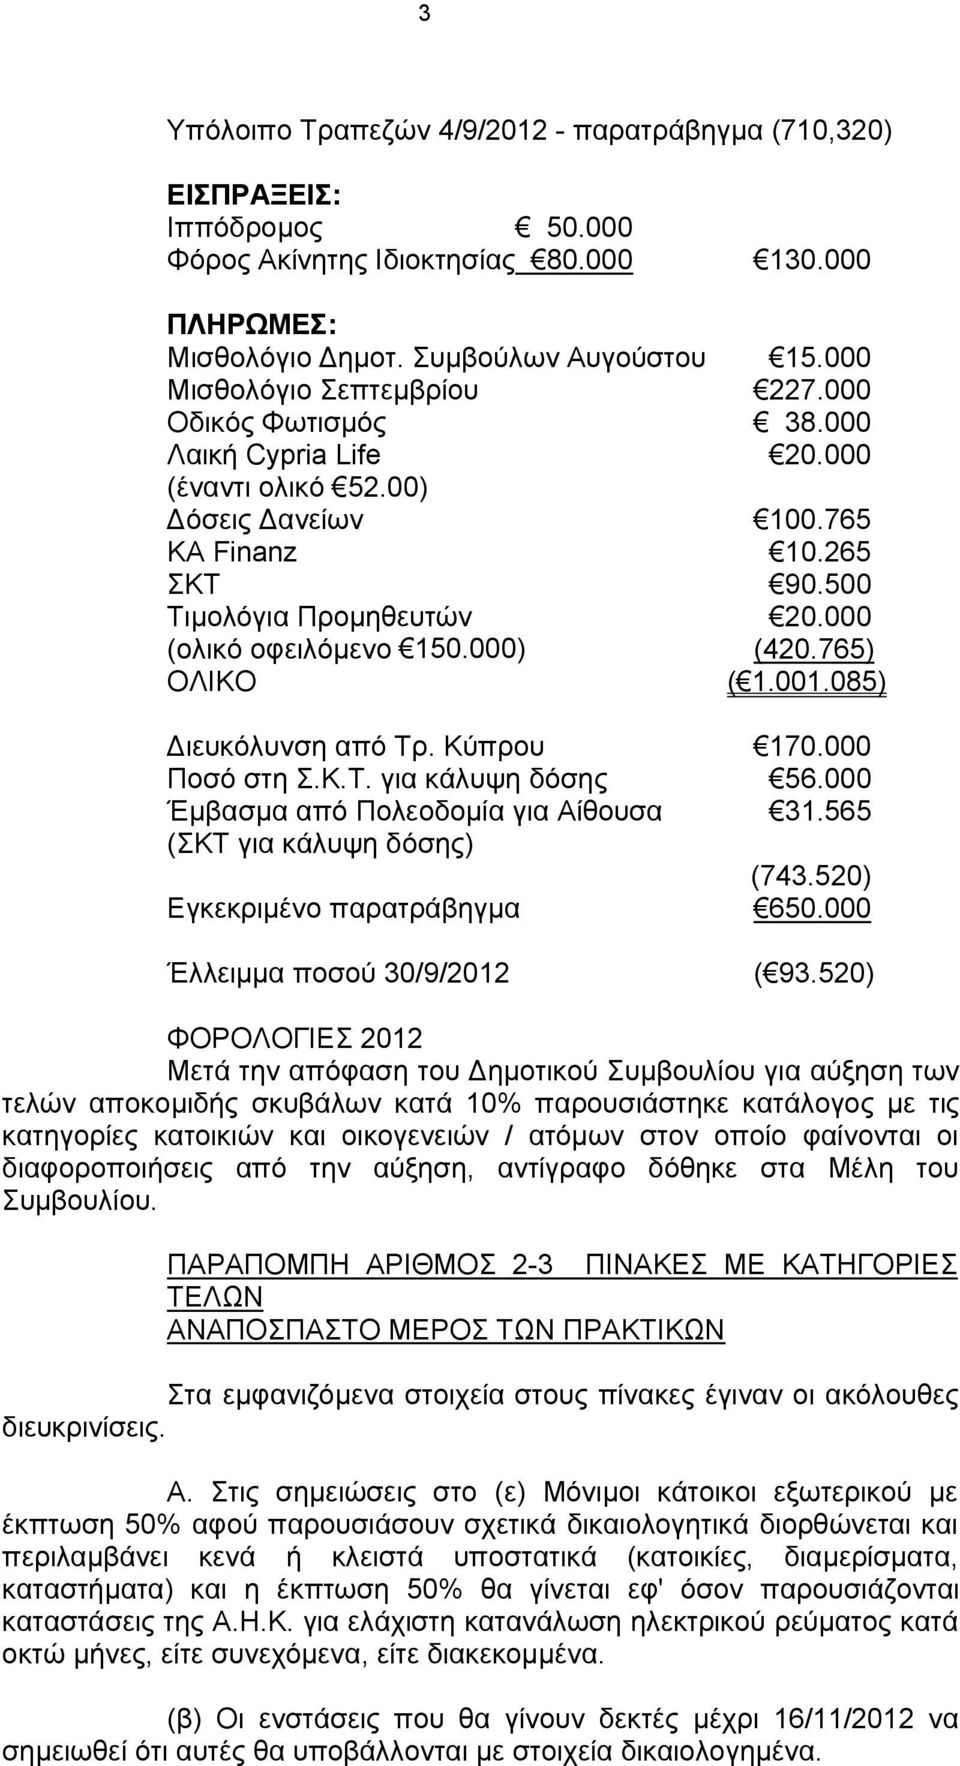 000 (ολικό οφειλόμενο 150.000) (420.765) ΟΛΙΚΟ ( 1.001.085) Διευκόλυνση από Τρ. Κύπρου 170.000 Ποσό στη Σ.Κ.Τ. για κάλυψη δόσης 56.000 Έμβασμα από Πολεοδομία για Αίθουσα 31.